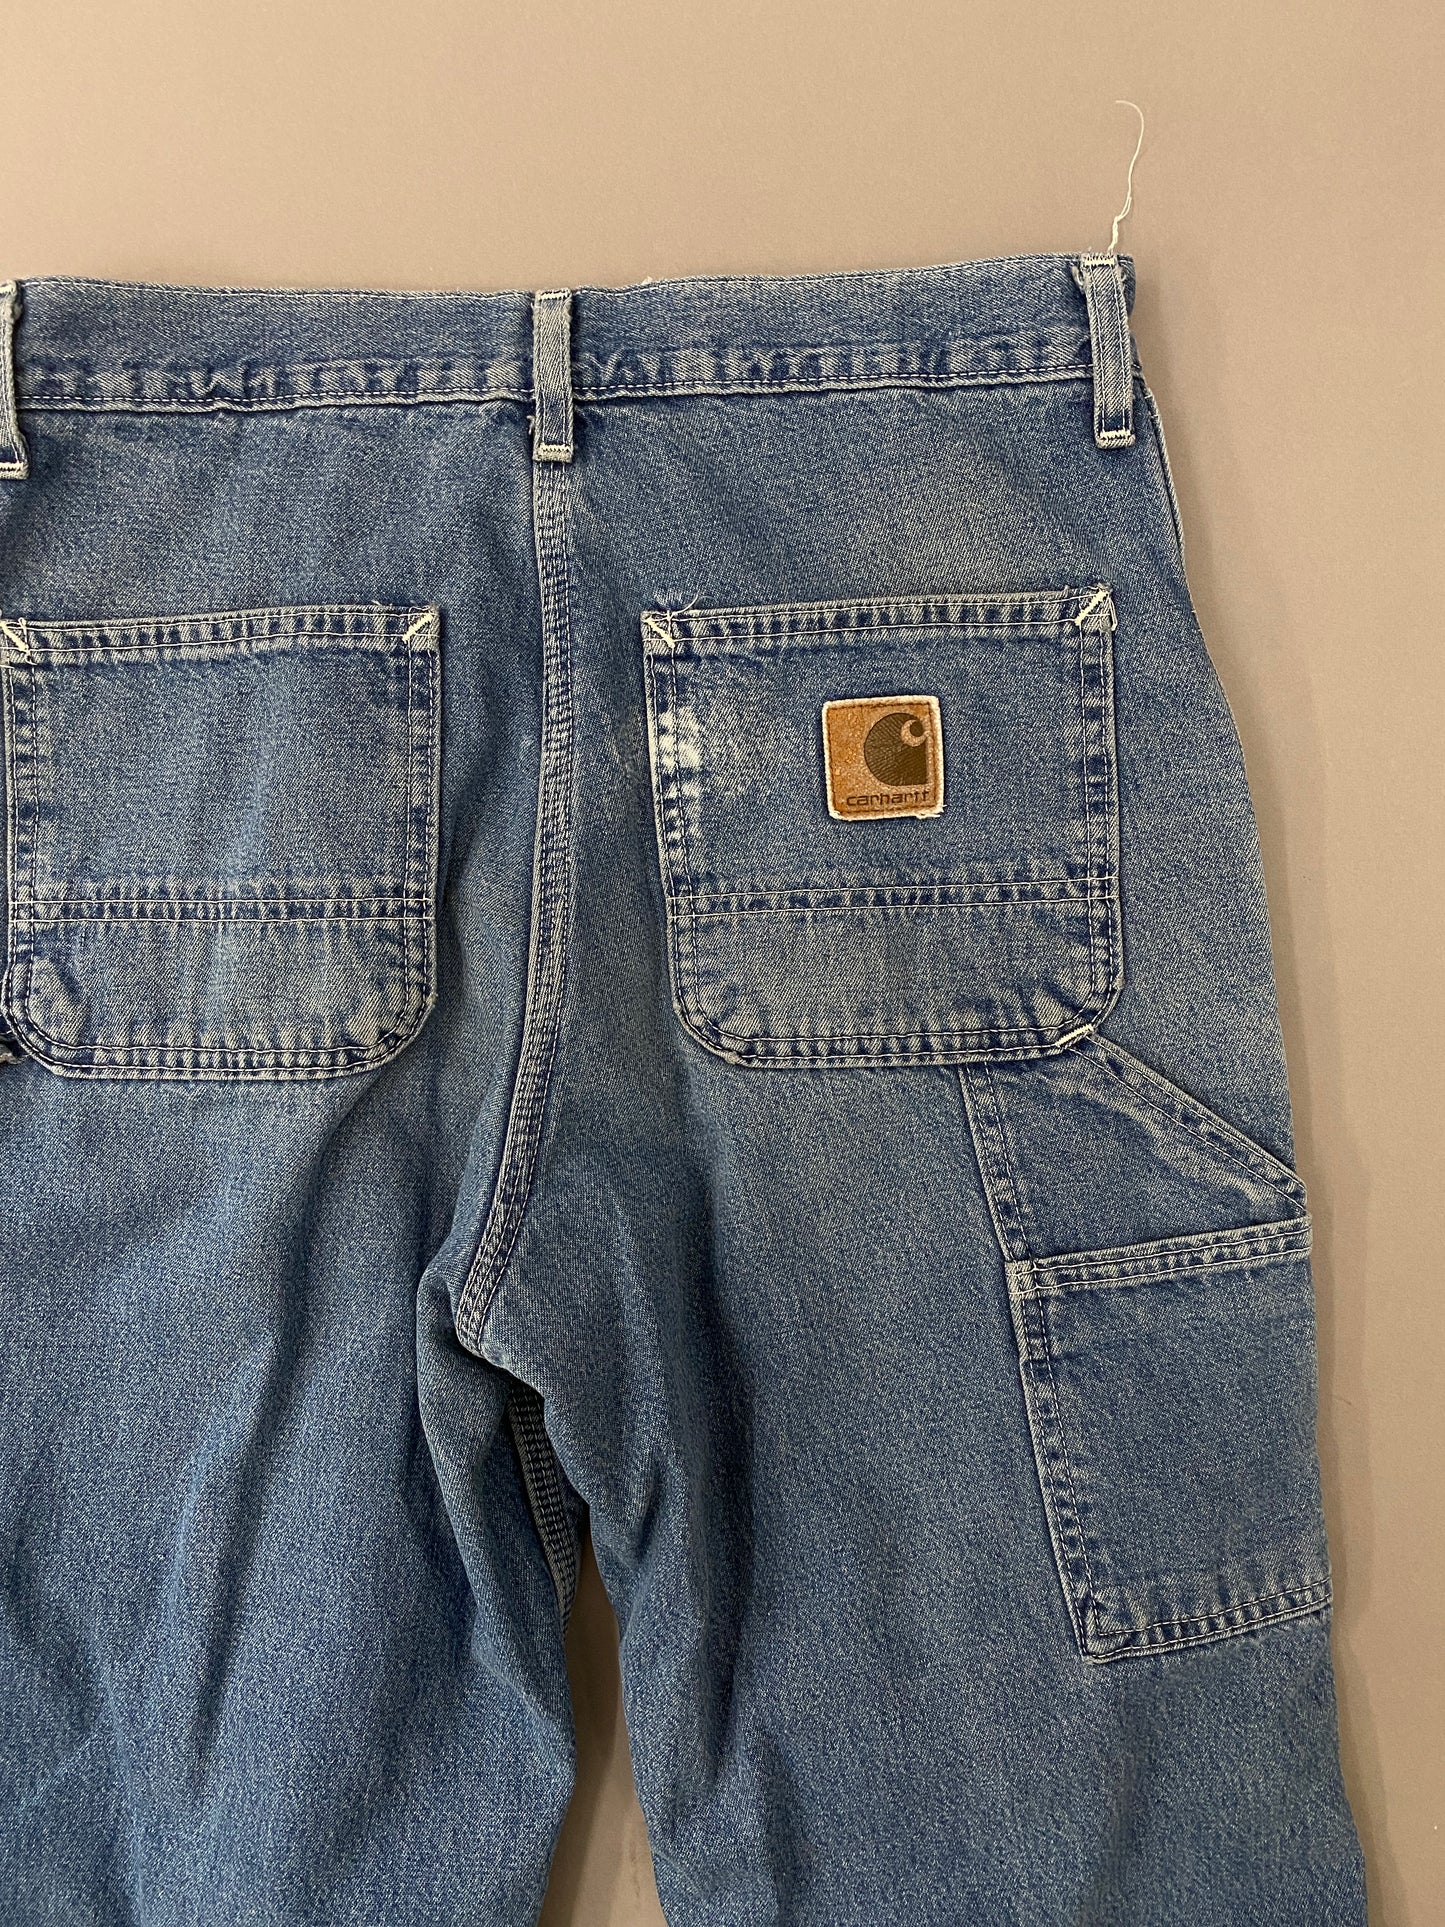 Carhartt Carpenter Jeans - 30x30